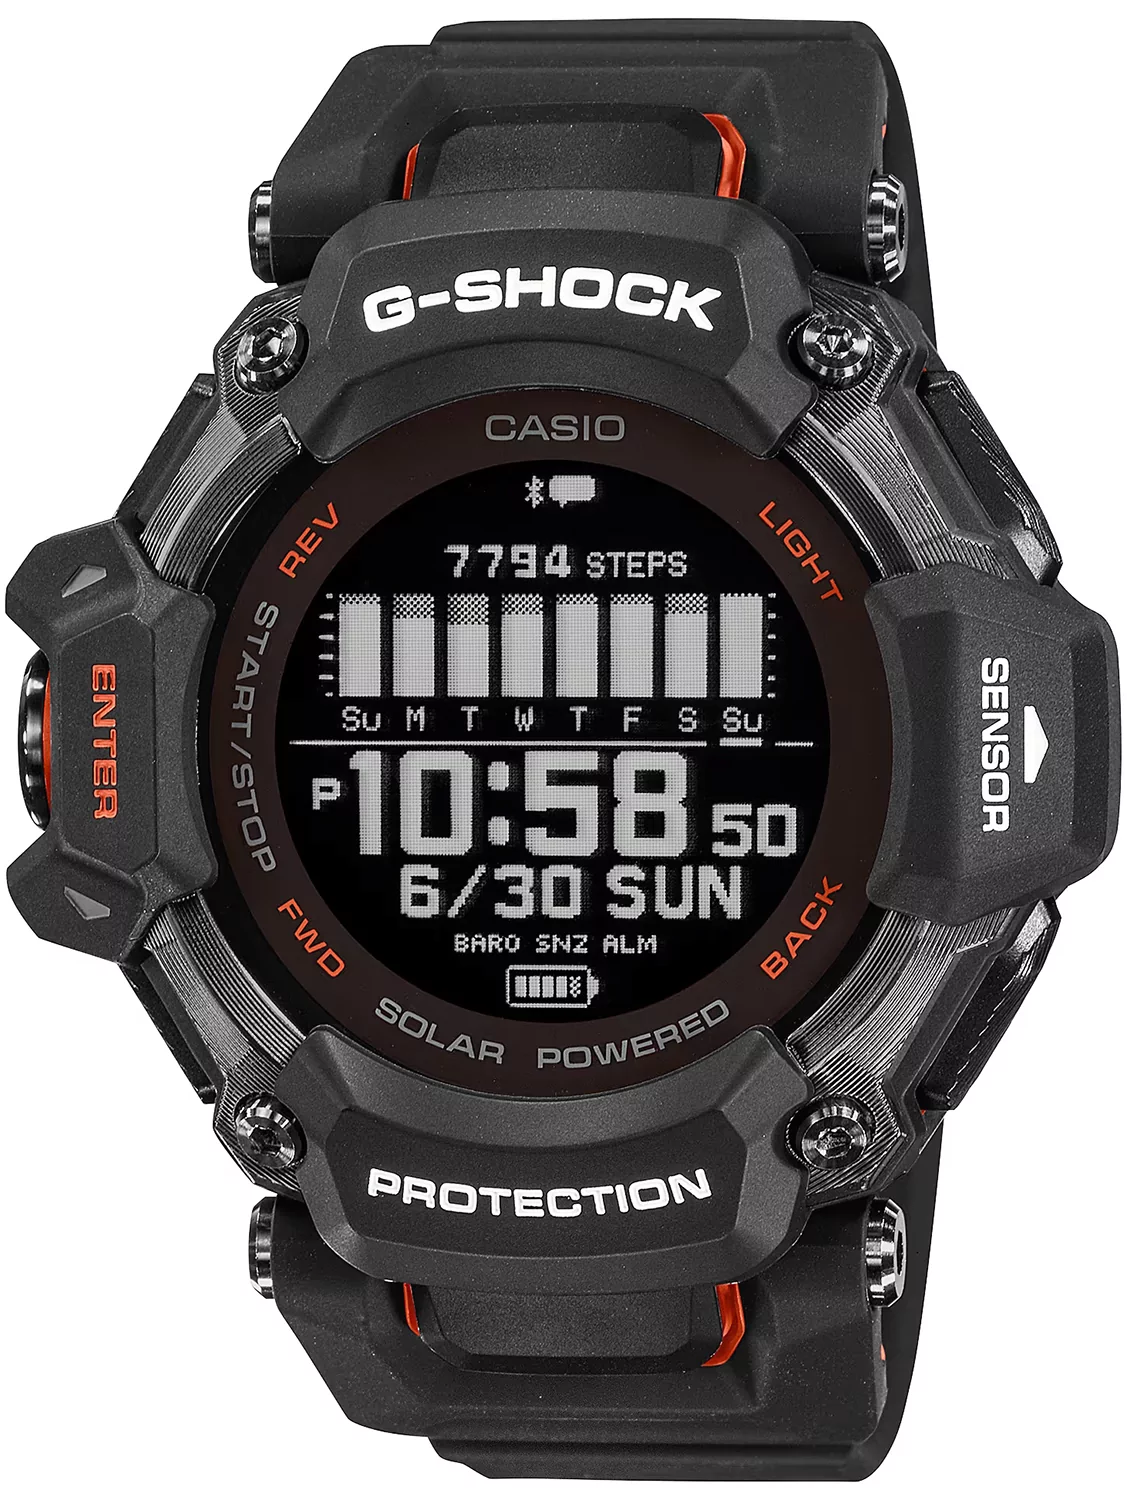 Zegarek G-SHOCK GBD-H2000-1AER G-SQUAD Heart Rate Monitor Bluetooth - Natychmiastowa WYSYŁKA 0zł (DHL DPD INPOST) | Grawer 1zł | Zwrot 100 dni